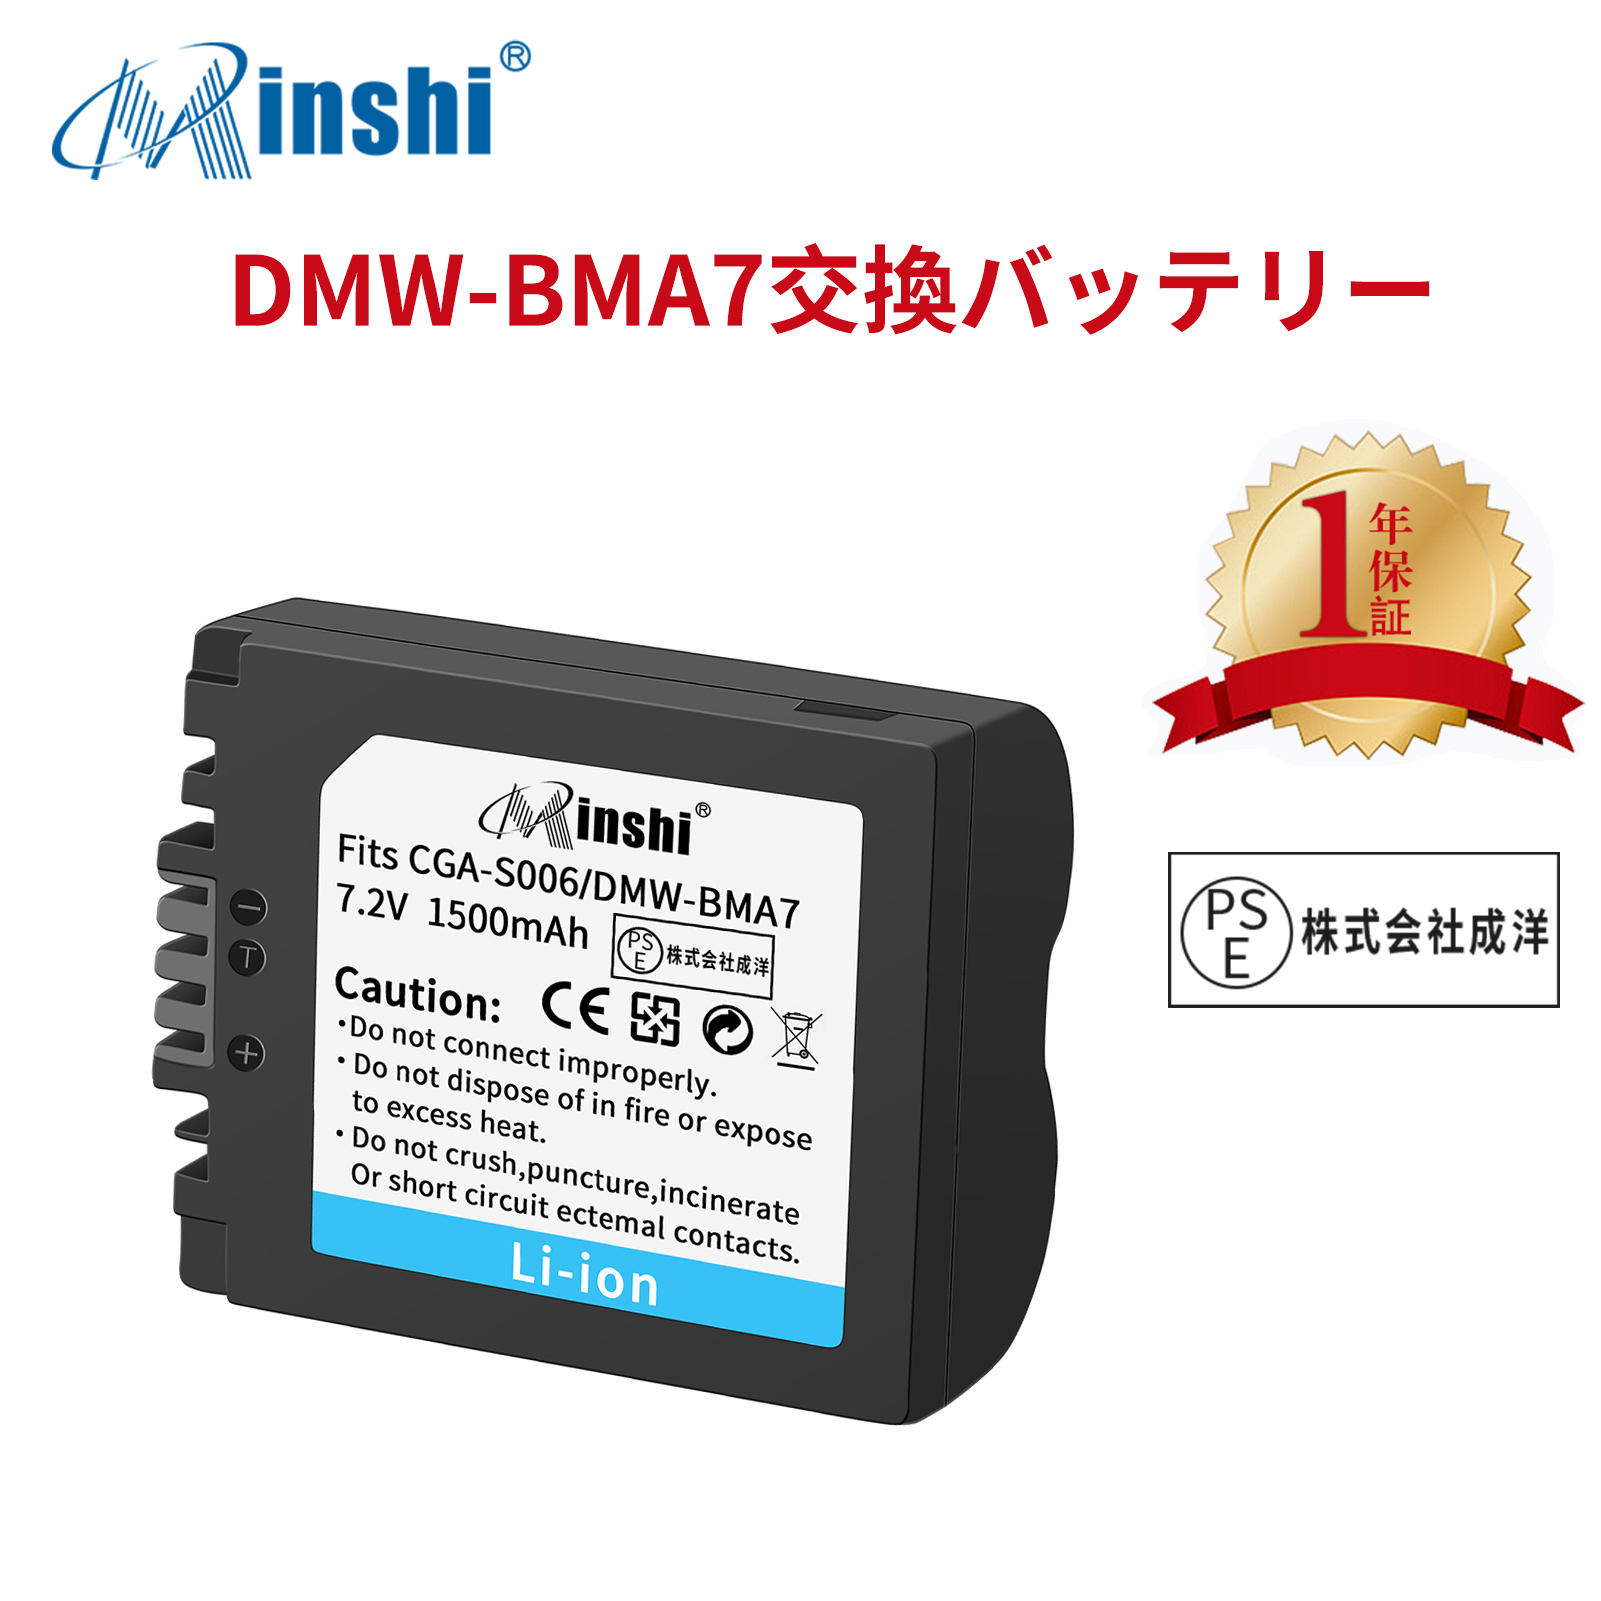 【1年保証】minshi Panasonic DMC-FZ28 DMC-FZ50  【1500mAh 7.2V】LUMIX PSE認定済 高品質 DMW-BMA7 交換用バッテリー